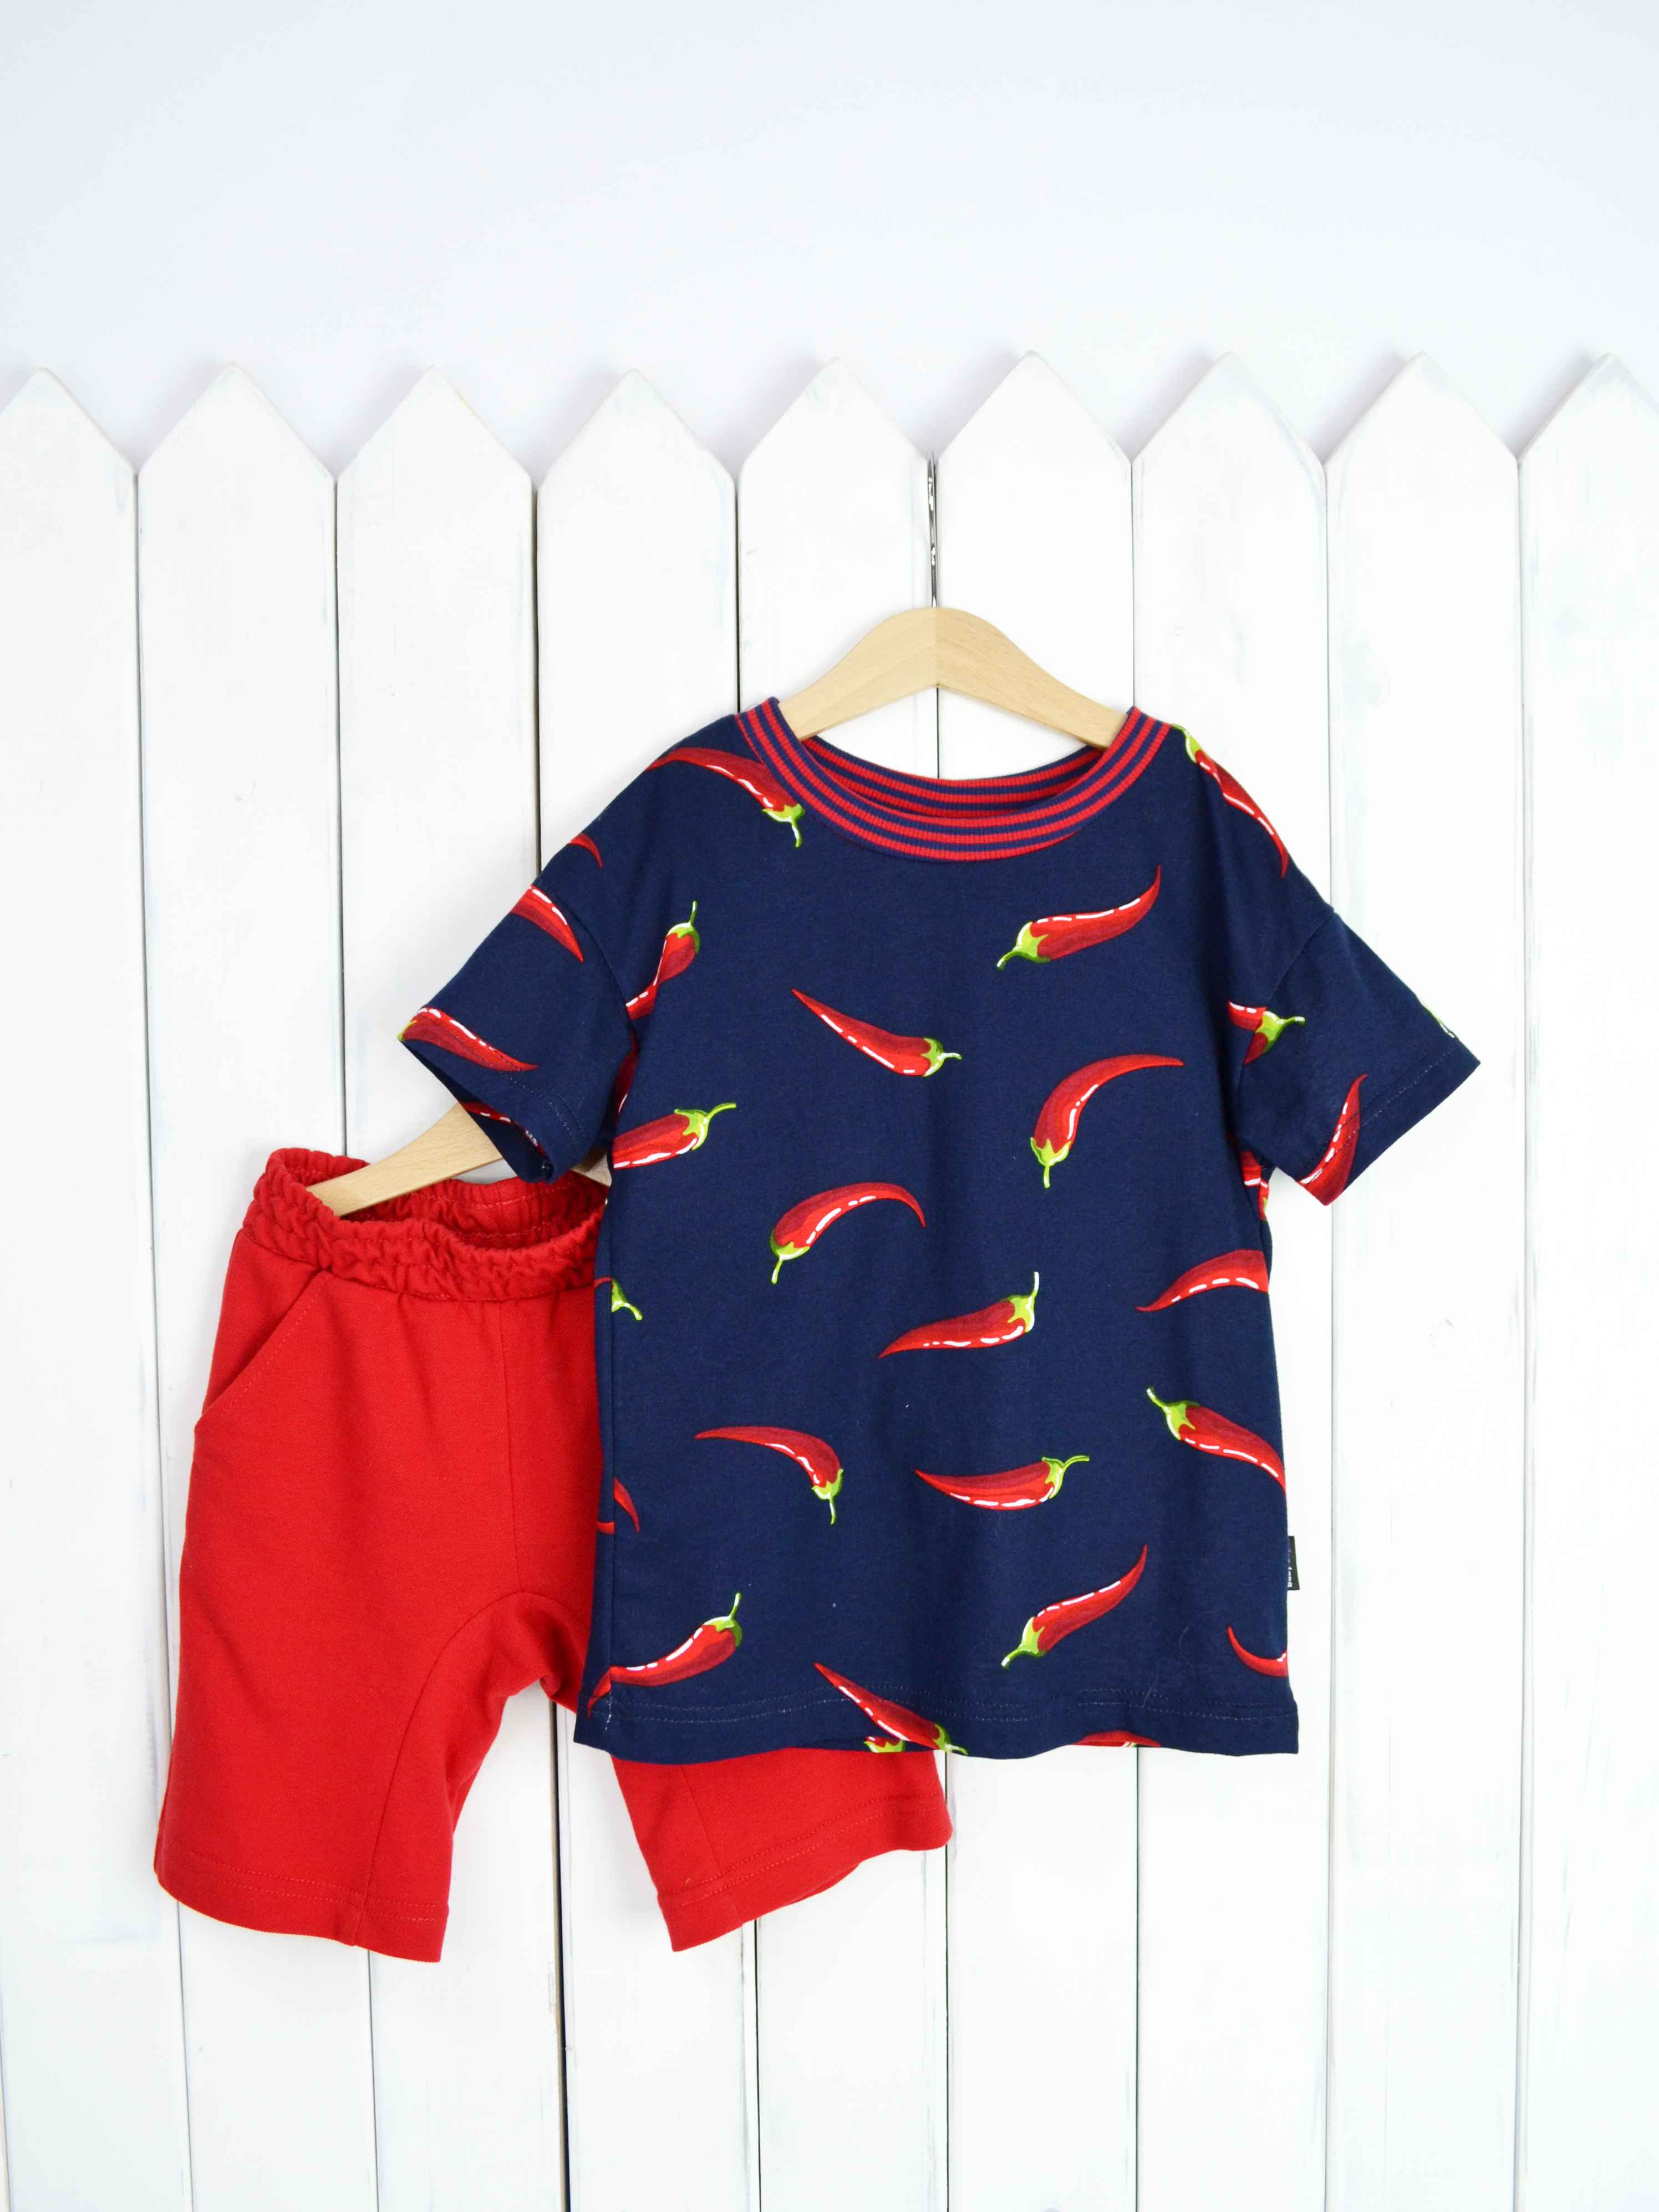 КД354/1-К Комплект детский р.92 Крутые перцы футболка+шорты/красное пике Бэби Бум - Пенза 